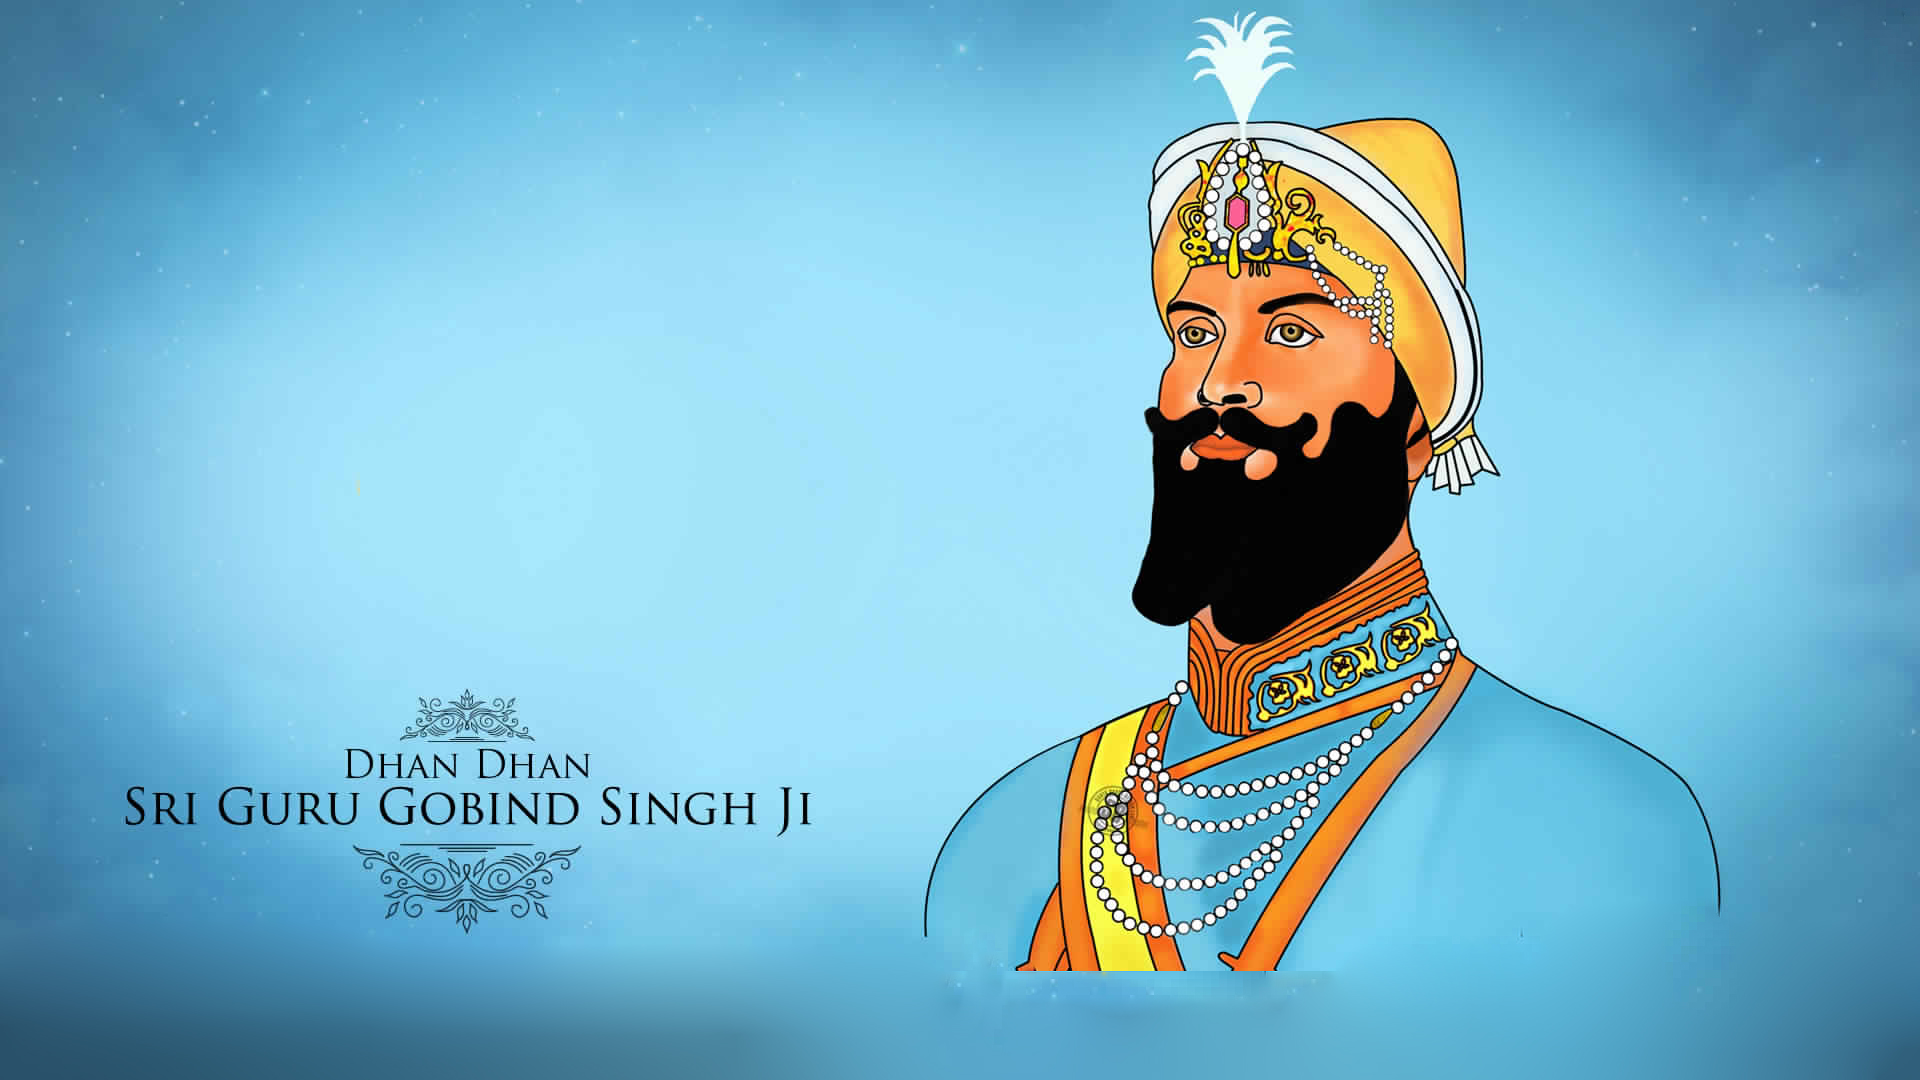 Original Picture Of Guru Gobind Singh Ji 3d Image Of Guru Gobind Singh Ji |  Festivals